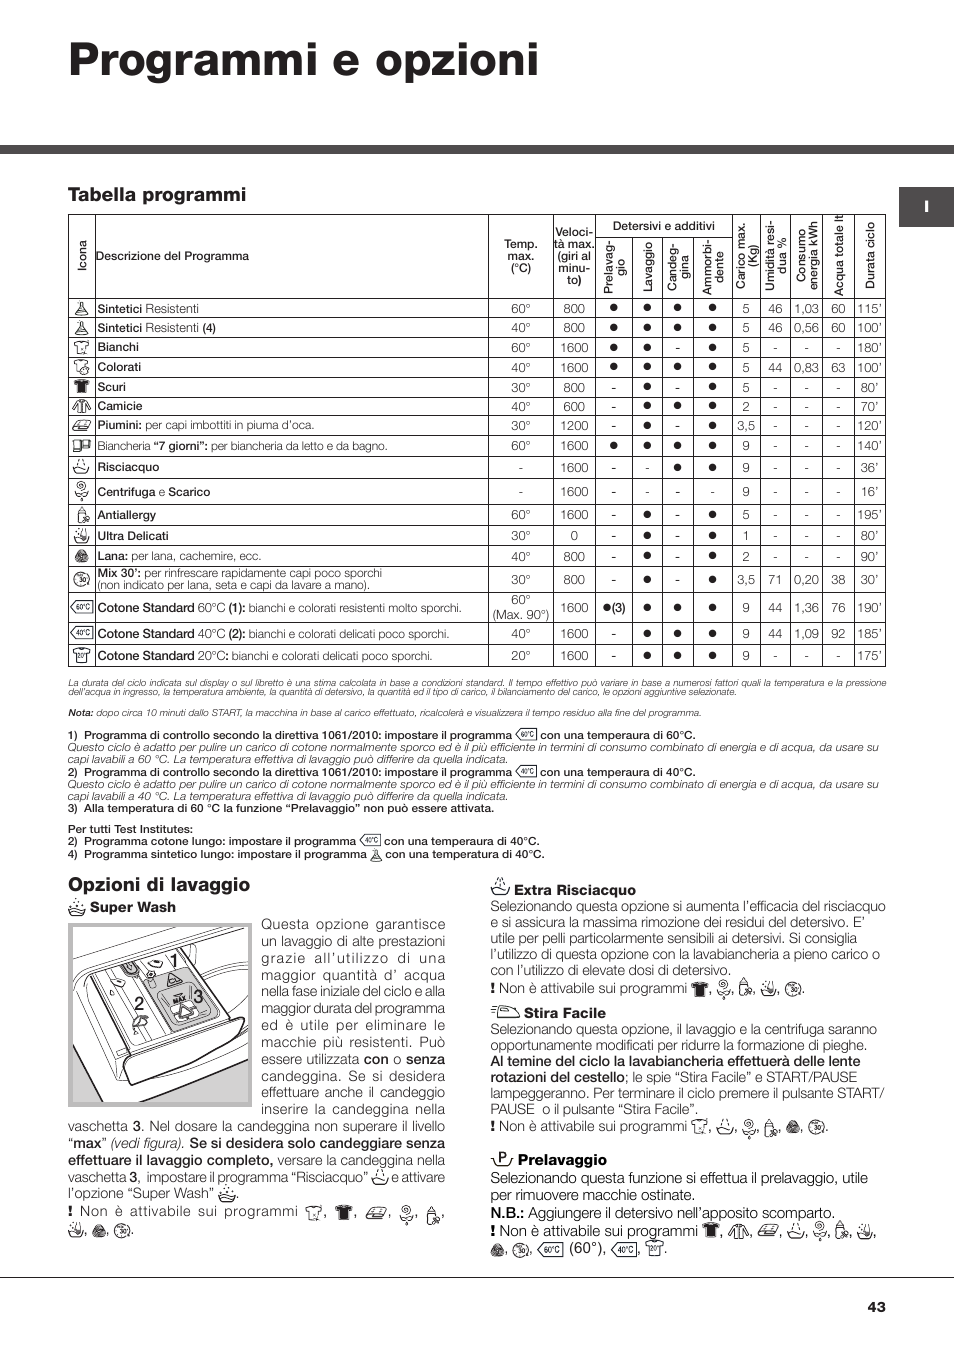 Programmi e opzioni, Opzioni di lavaggio, Tabella programmi | Hotpoint  Ariston Aqualtis ADS93D 69 EU-A User Manual | Page 43 / 80